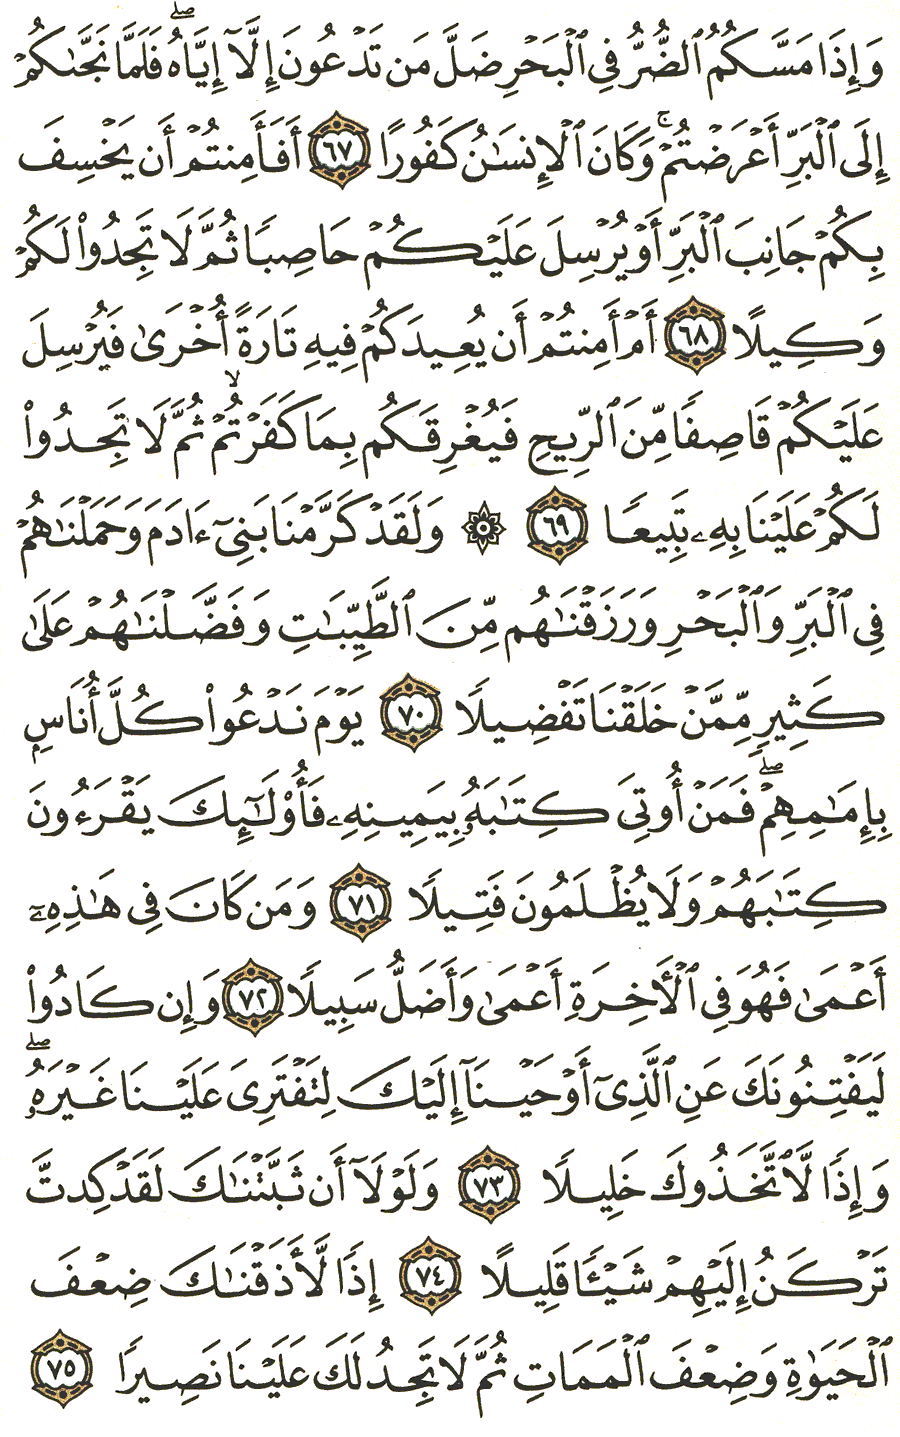 الصفحة 289 من القرآن الكريم